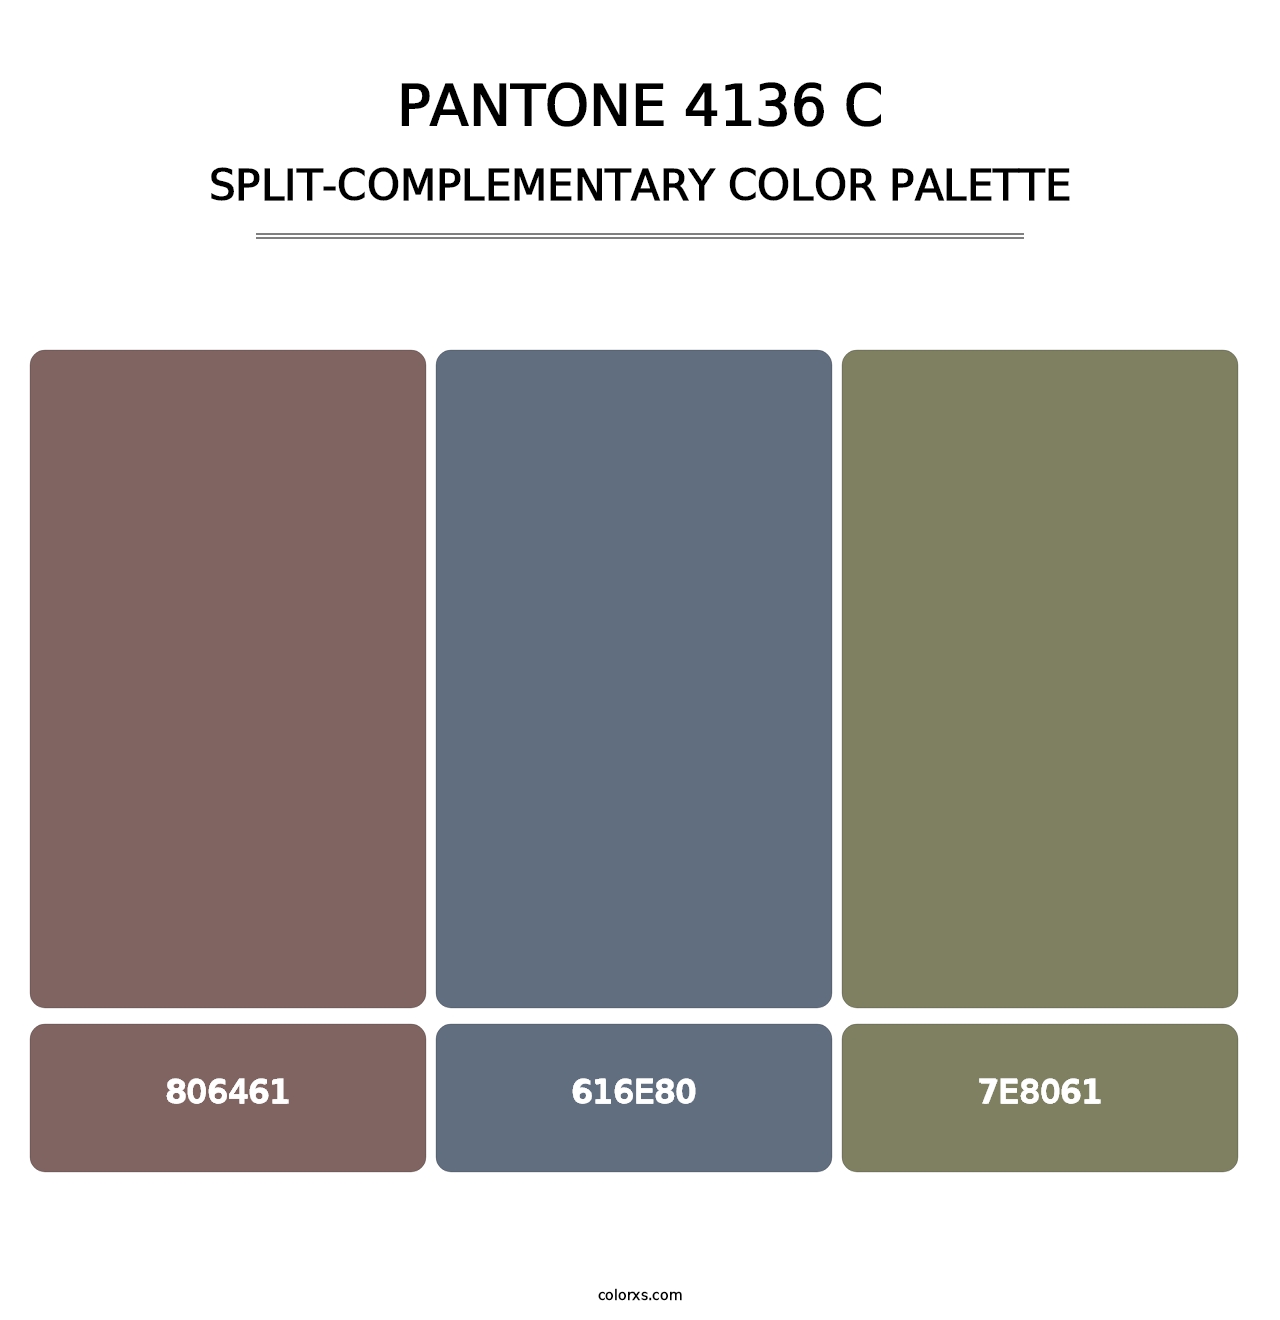 PANTONE 4136 C - Split-Complementary Color Palette